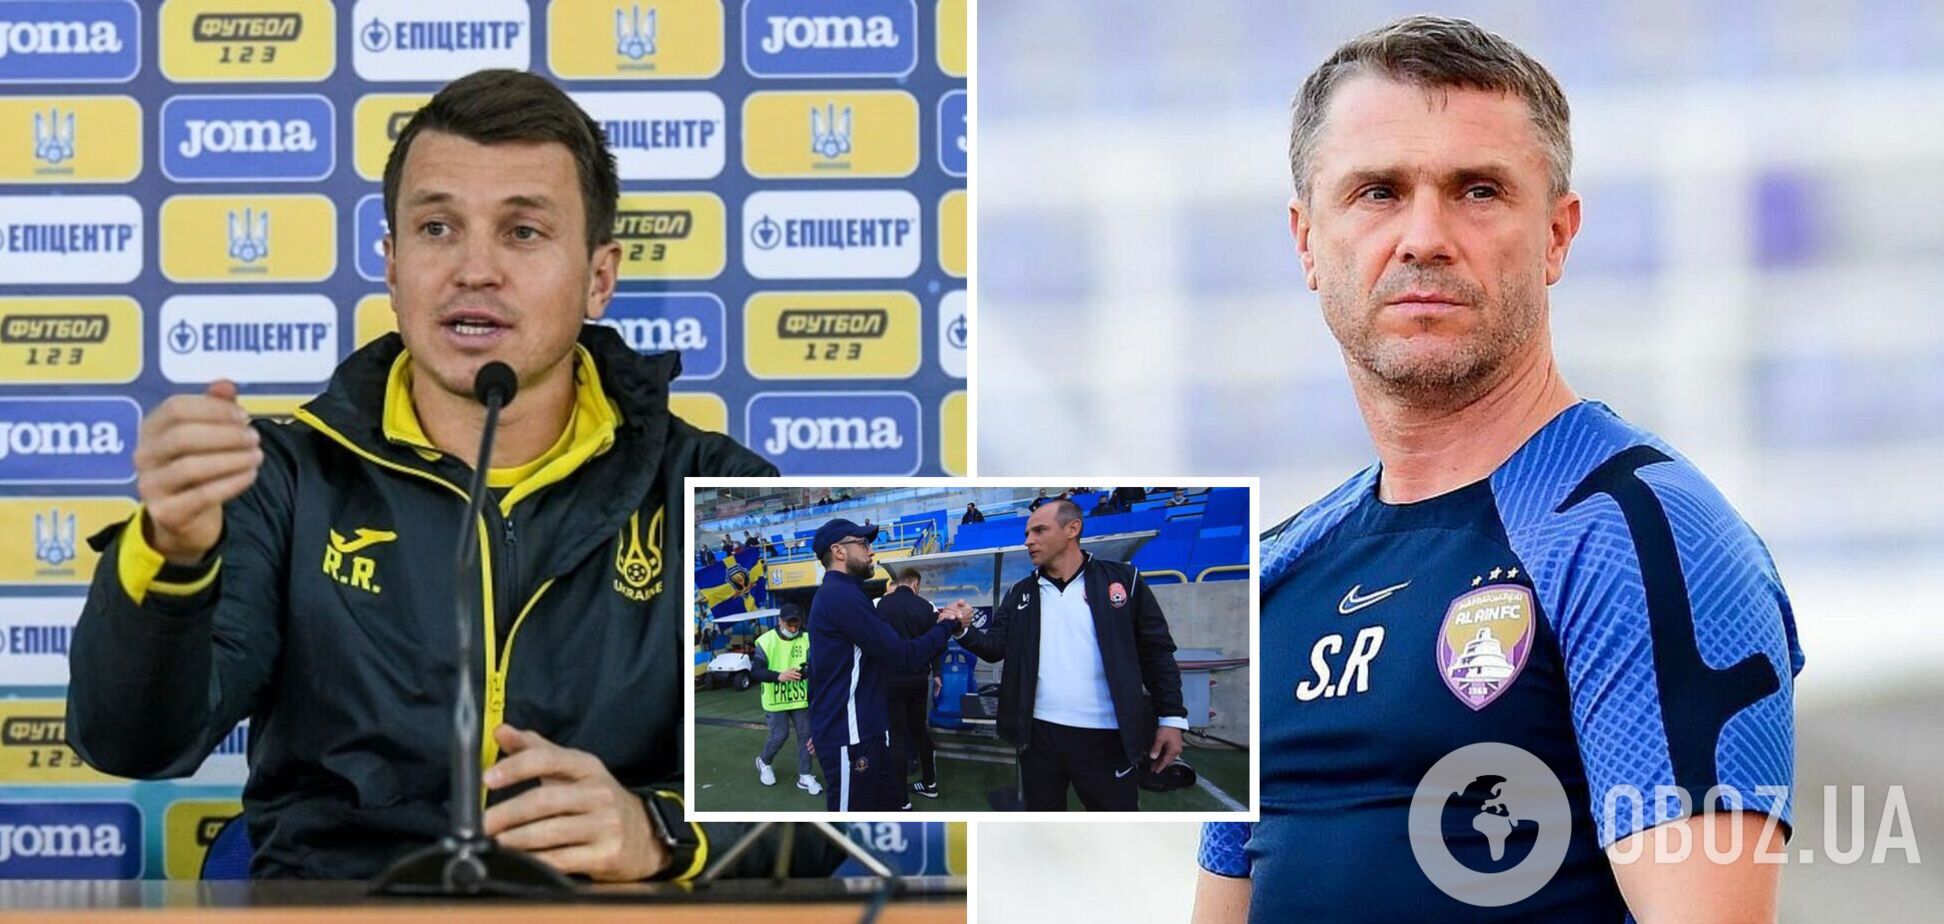 СМИ назвали двух тренеров, которые могут возглавить сборную Украины вместо Реброва